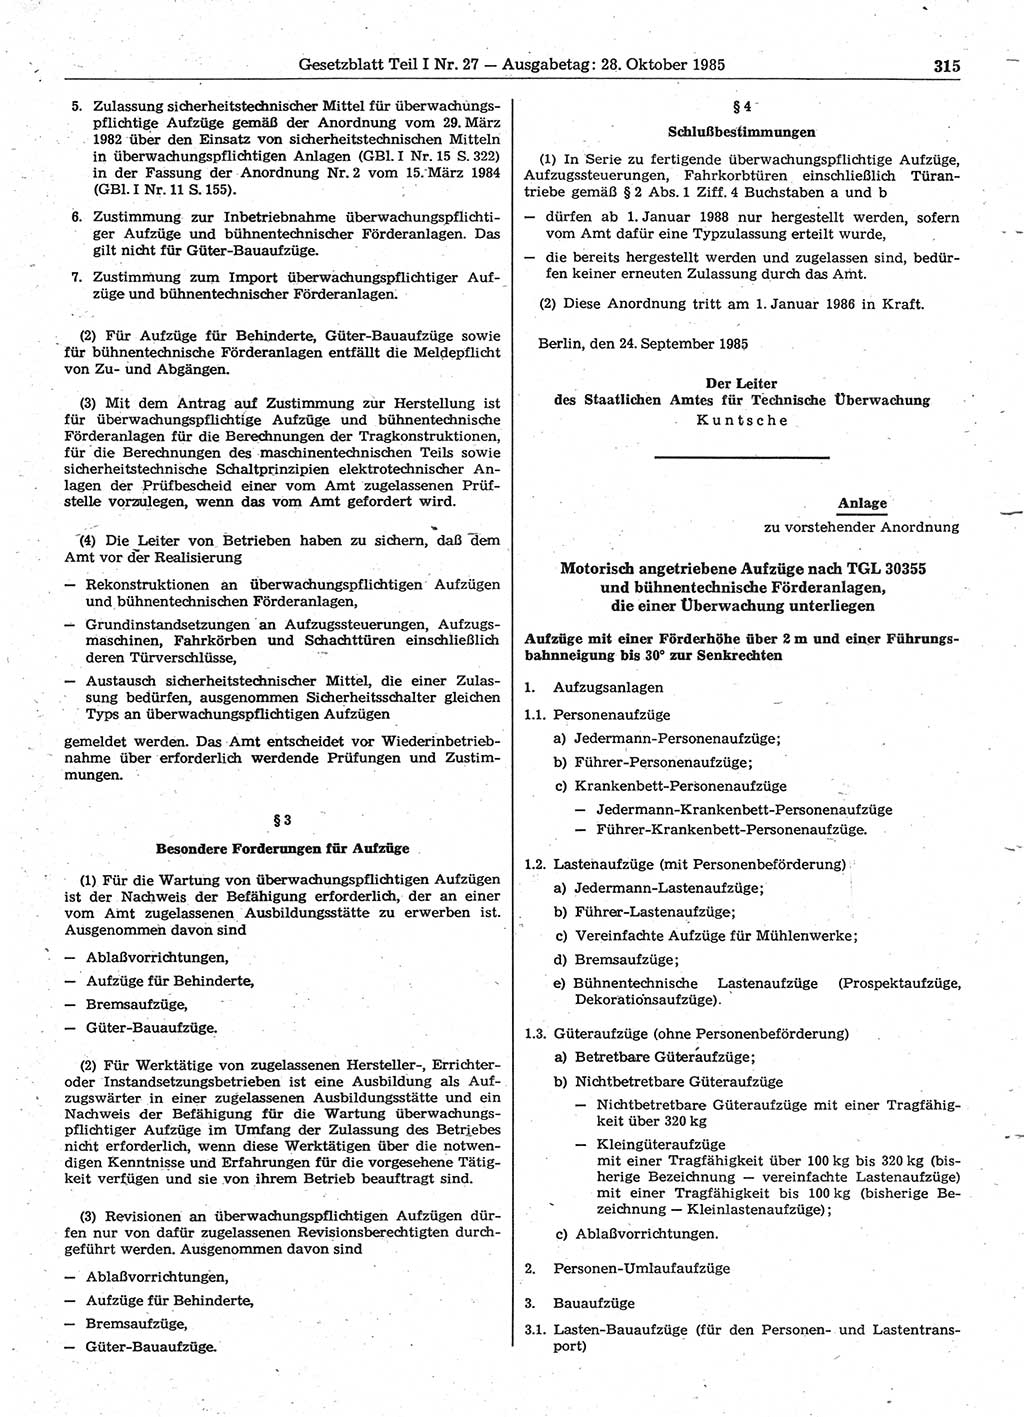 Gesetzblatt (GBl.) der Deutschen Demokratischen Republik (DDR) Teil Ⅰ 1985, Seite 315 (GBl. DDR Ⅰ 1985, S. 315)